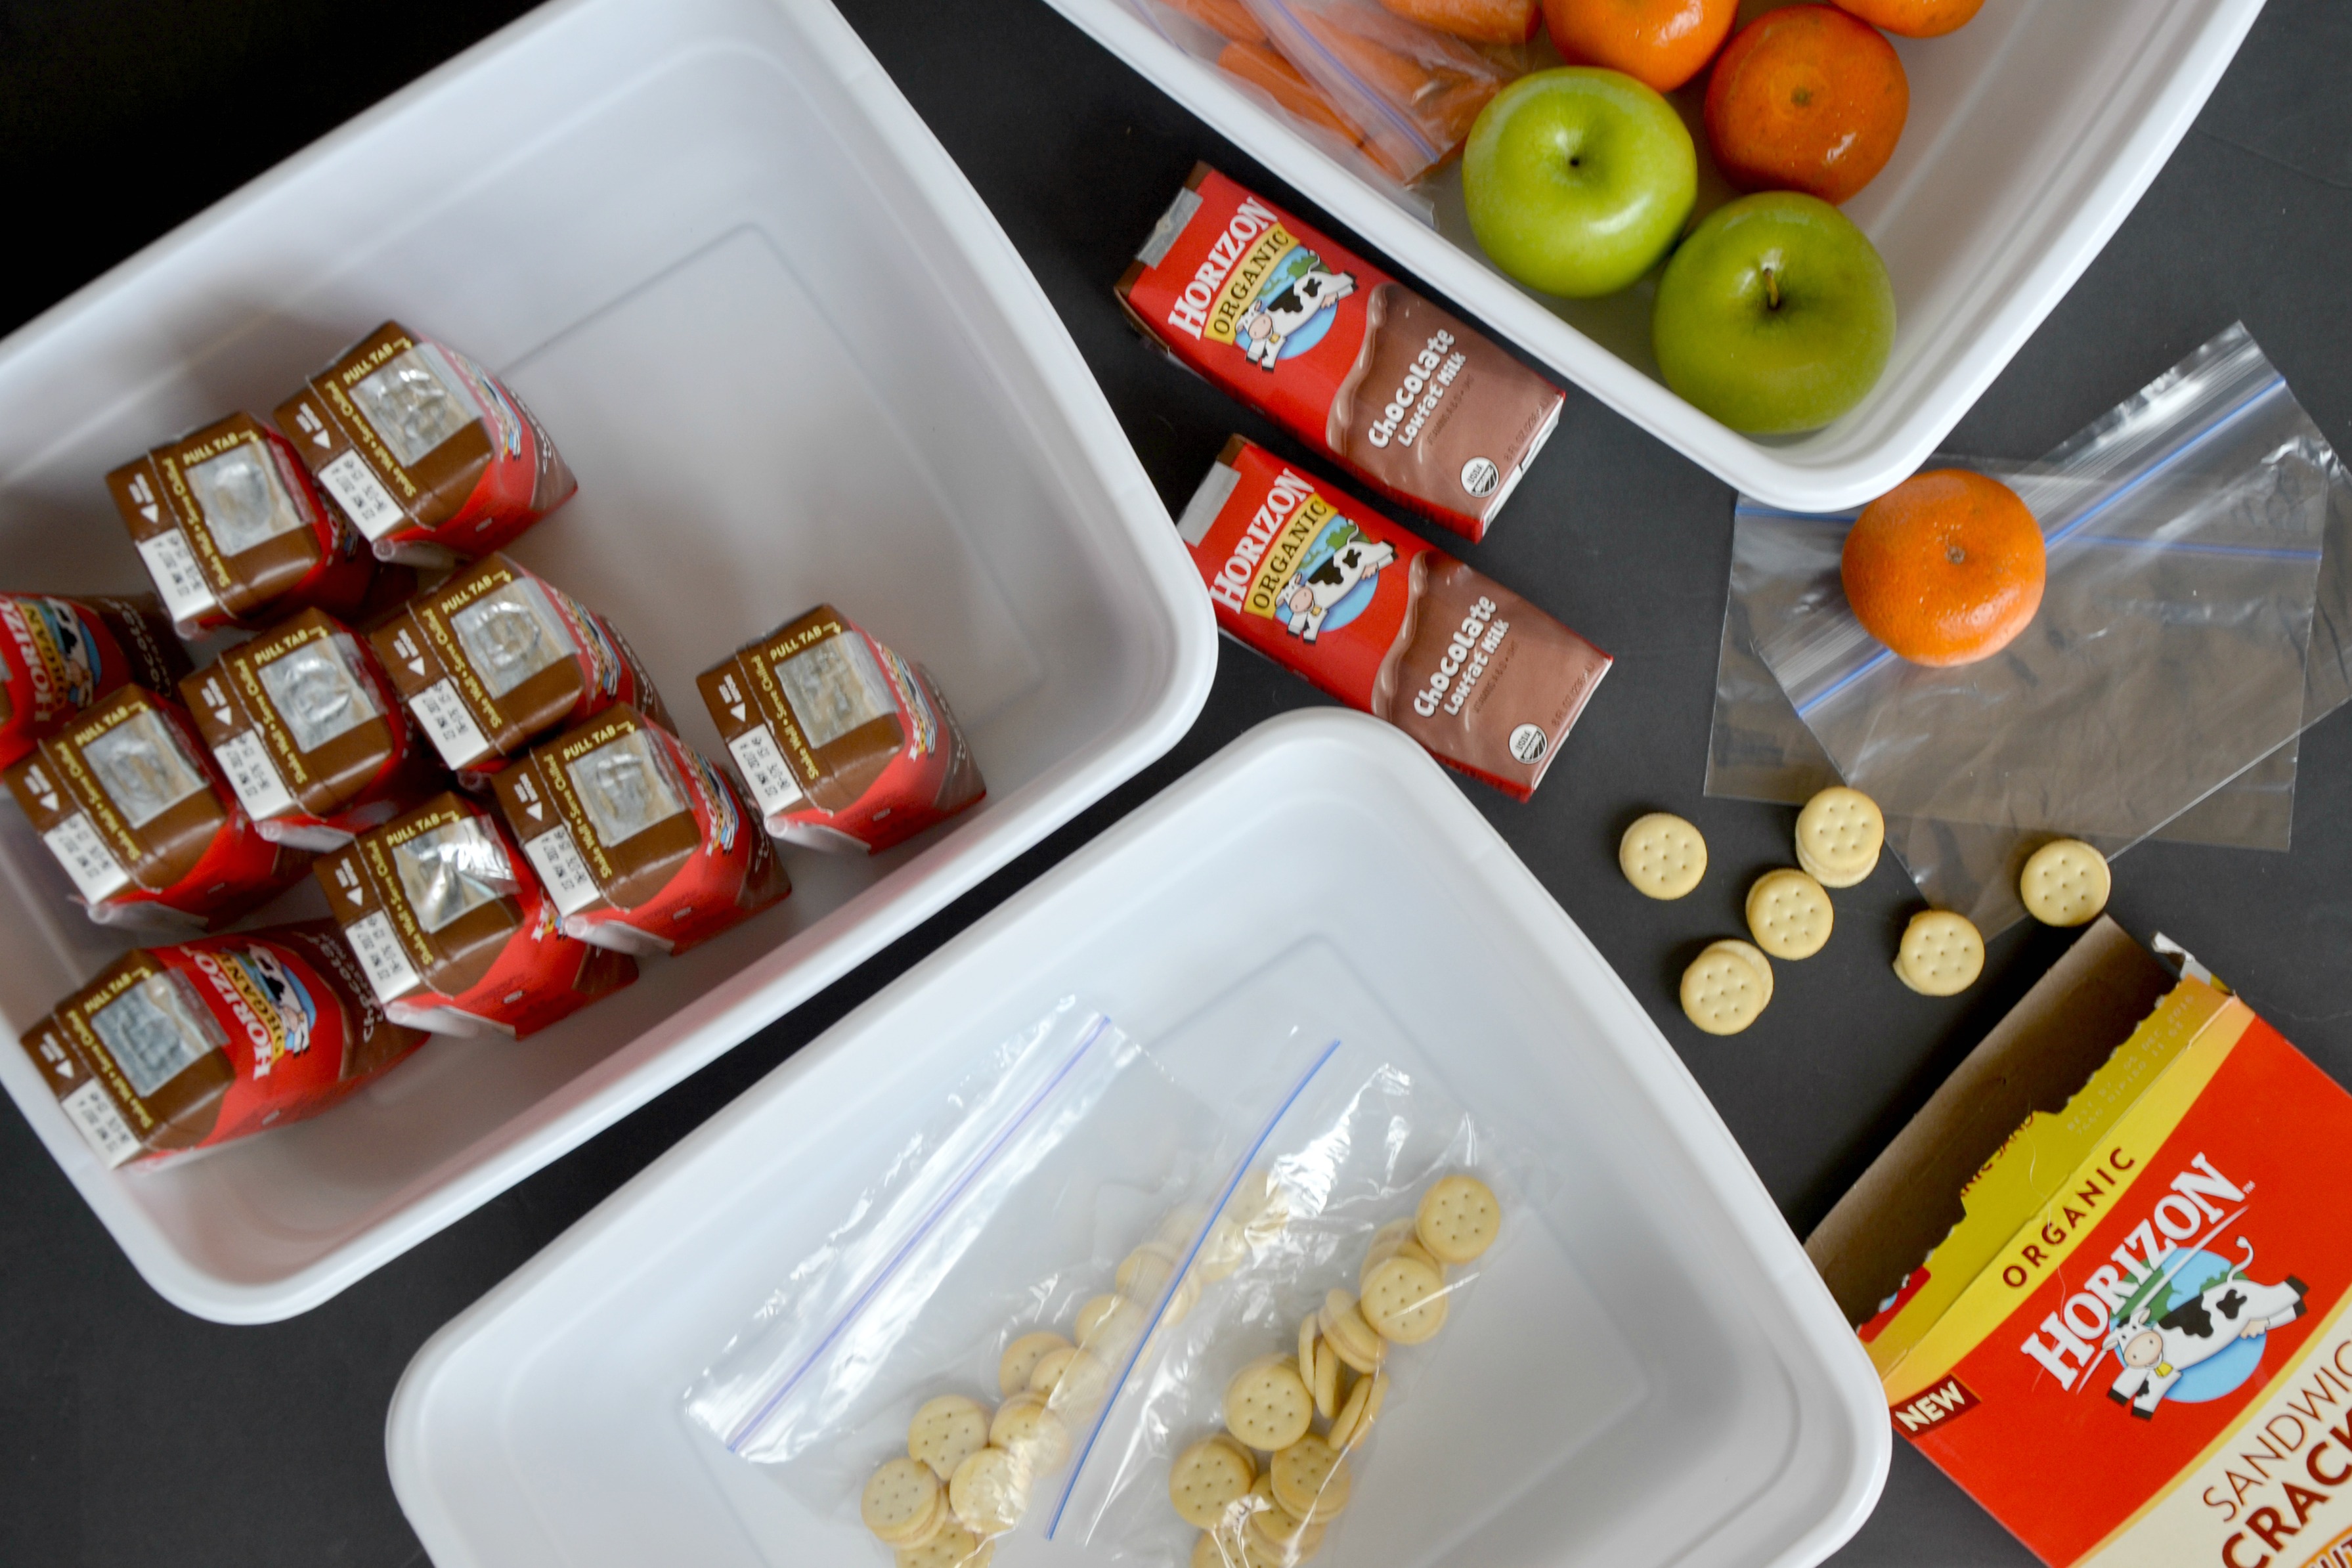 Easy Lunch Box Organization bins